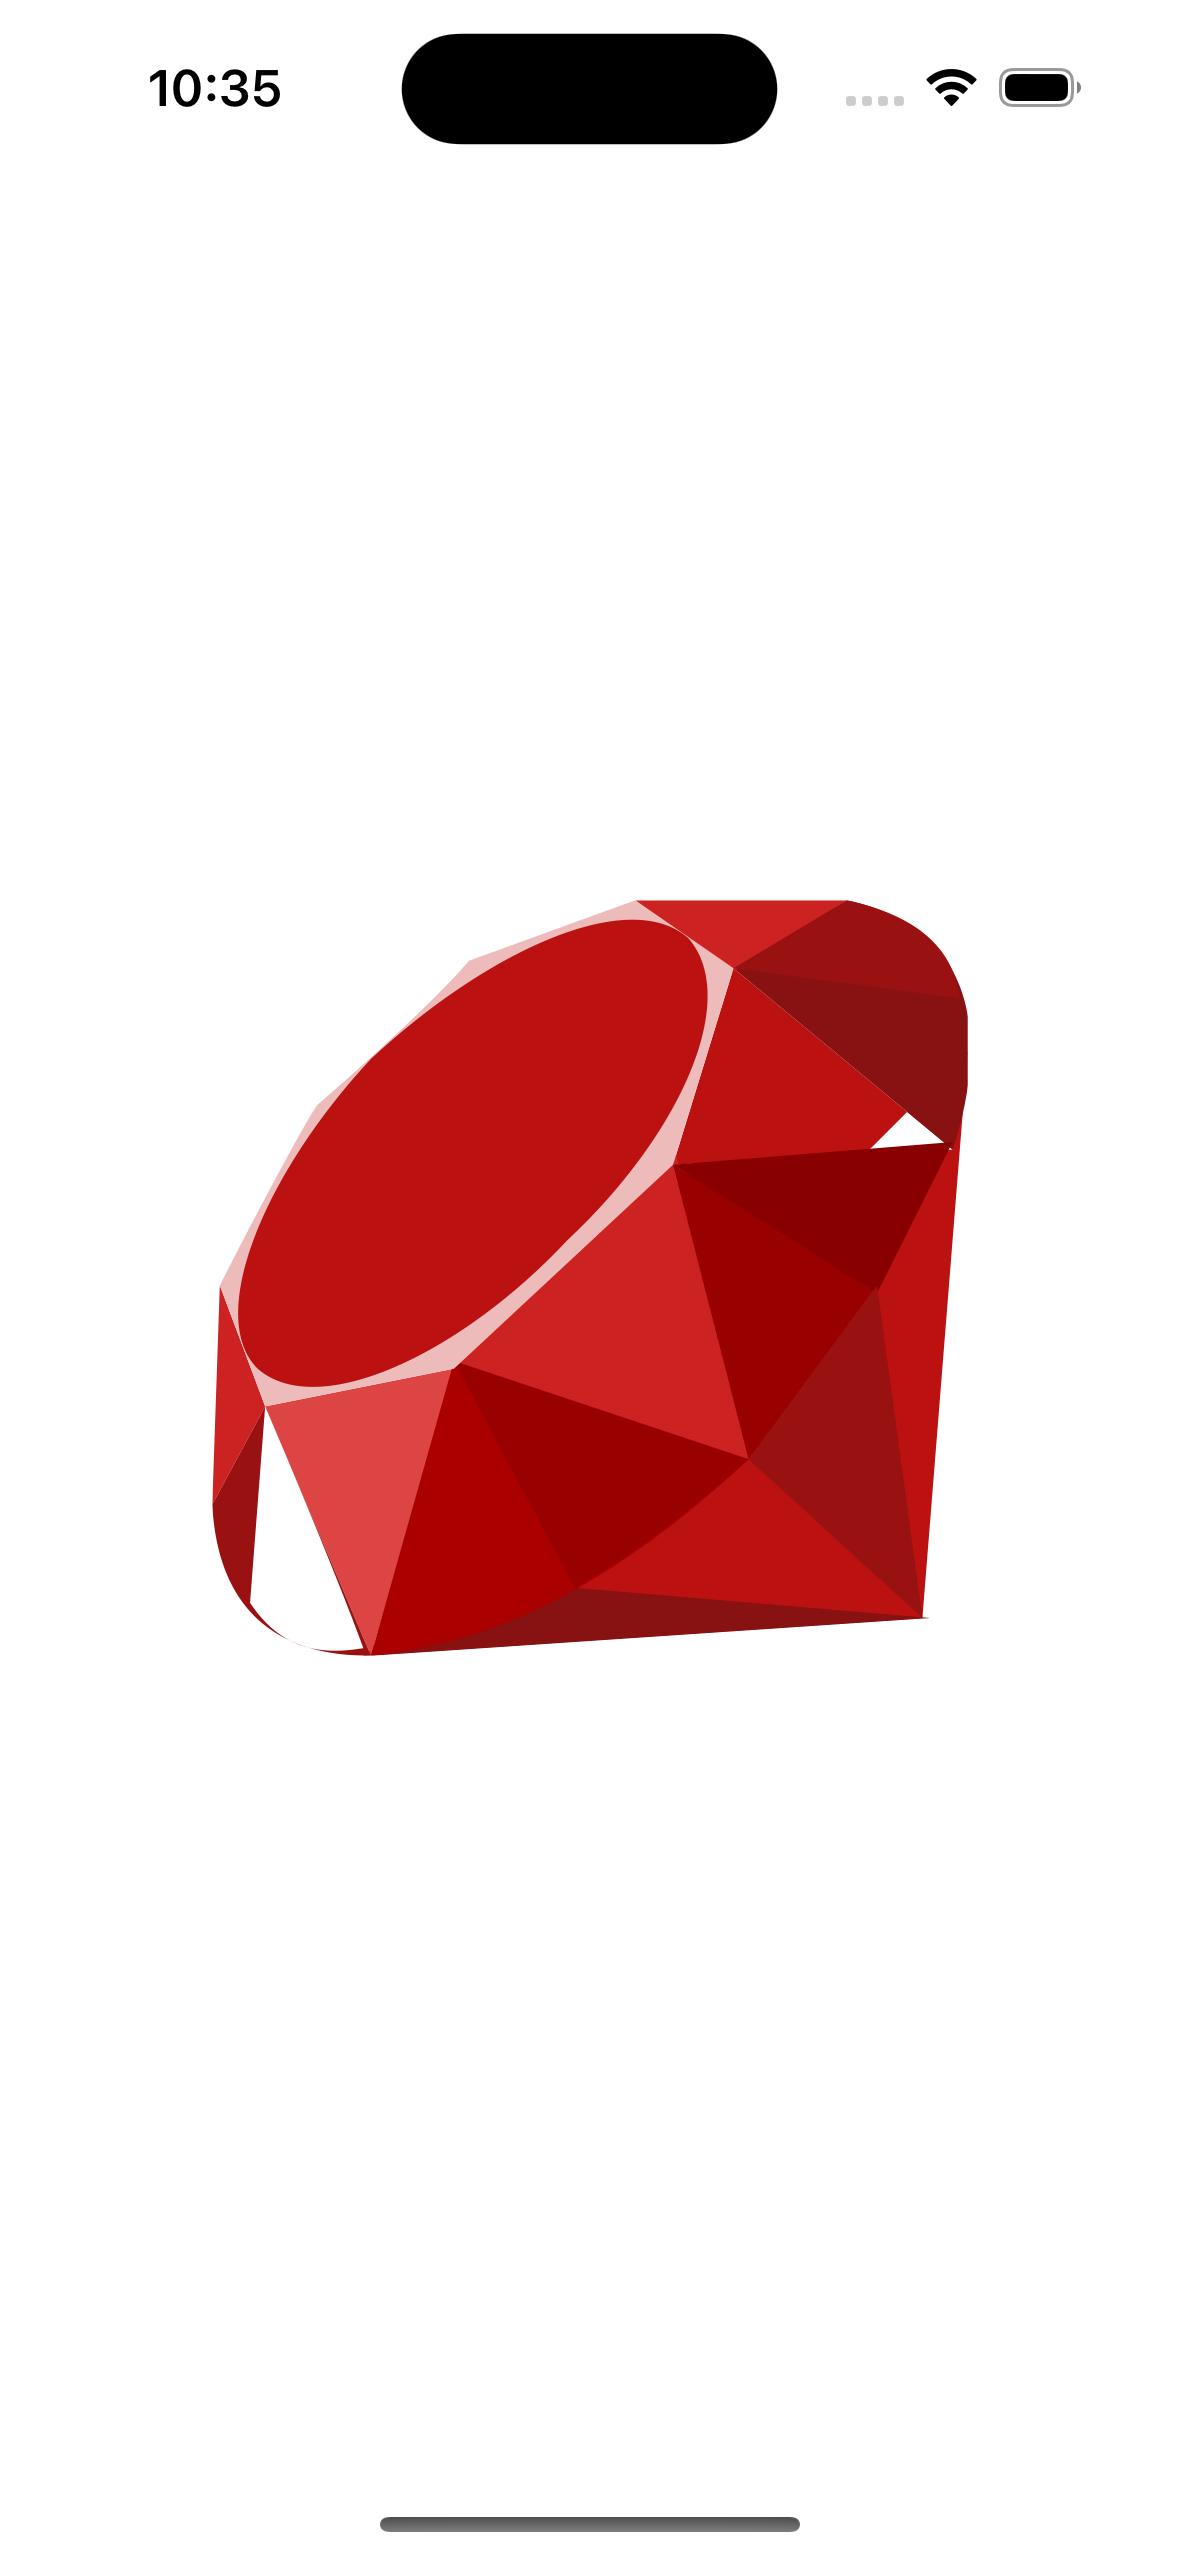 SVG Ruby logo in iOS simulator